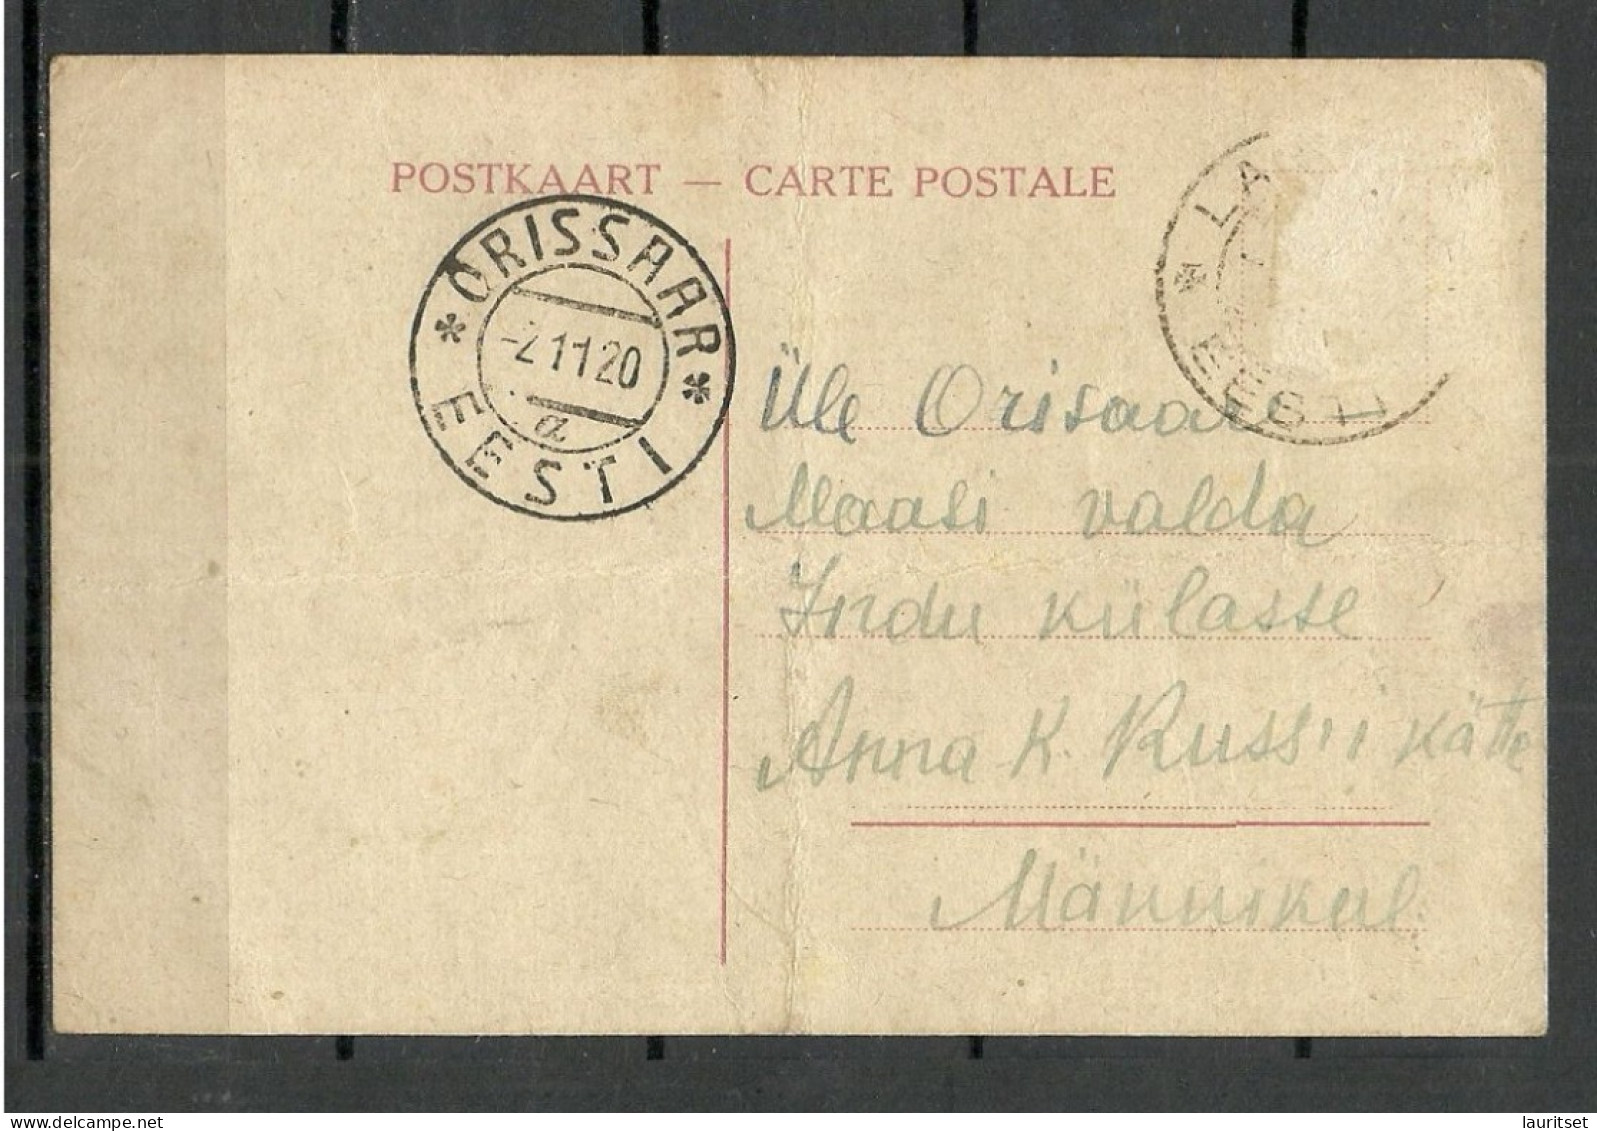 ESTLAND Estonia 1920 O ORISSAAR Orissaare & Laimjala On Domestic Post Card Stamp Missing/Marke Fehlt NB! Folded! - Estonie